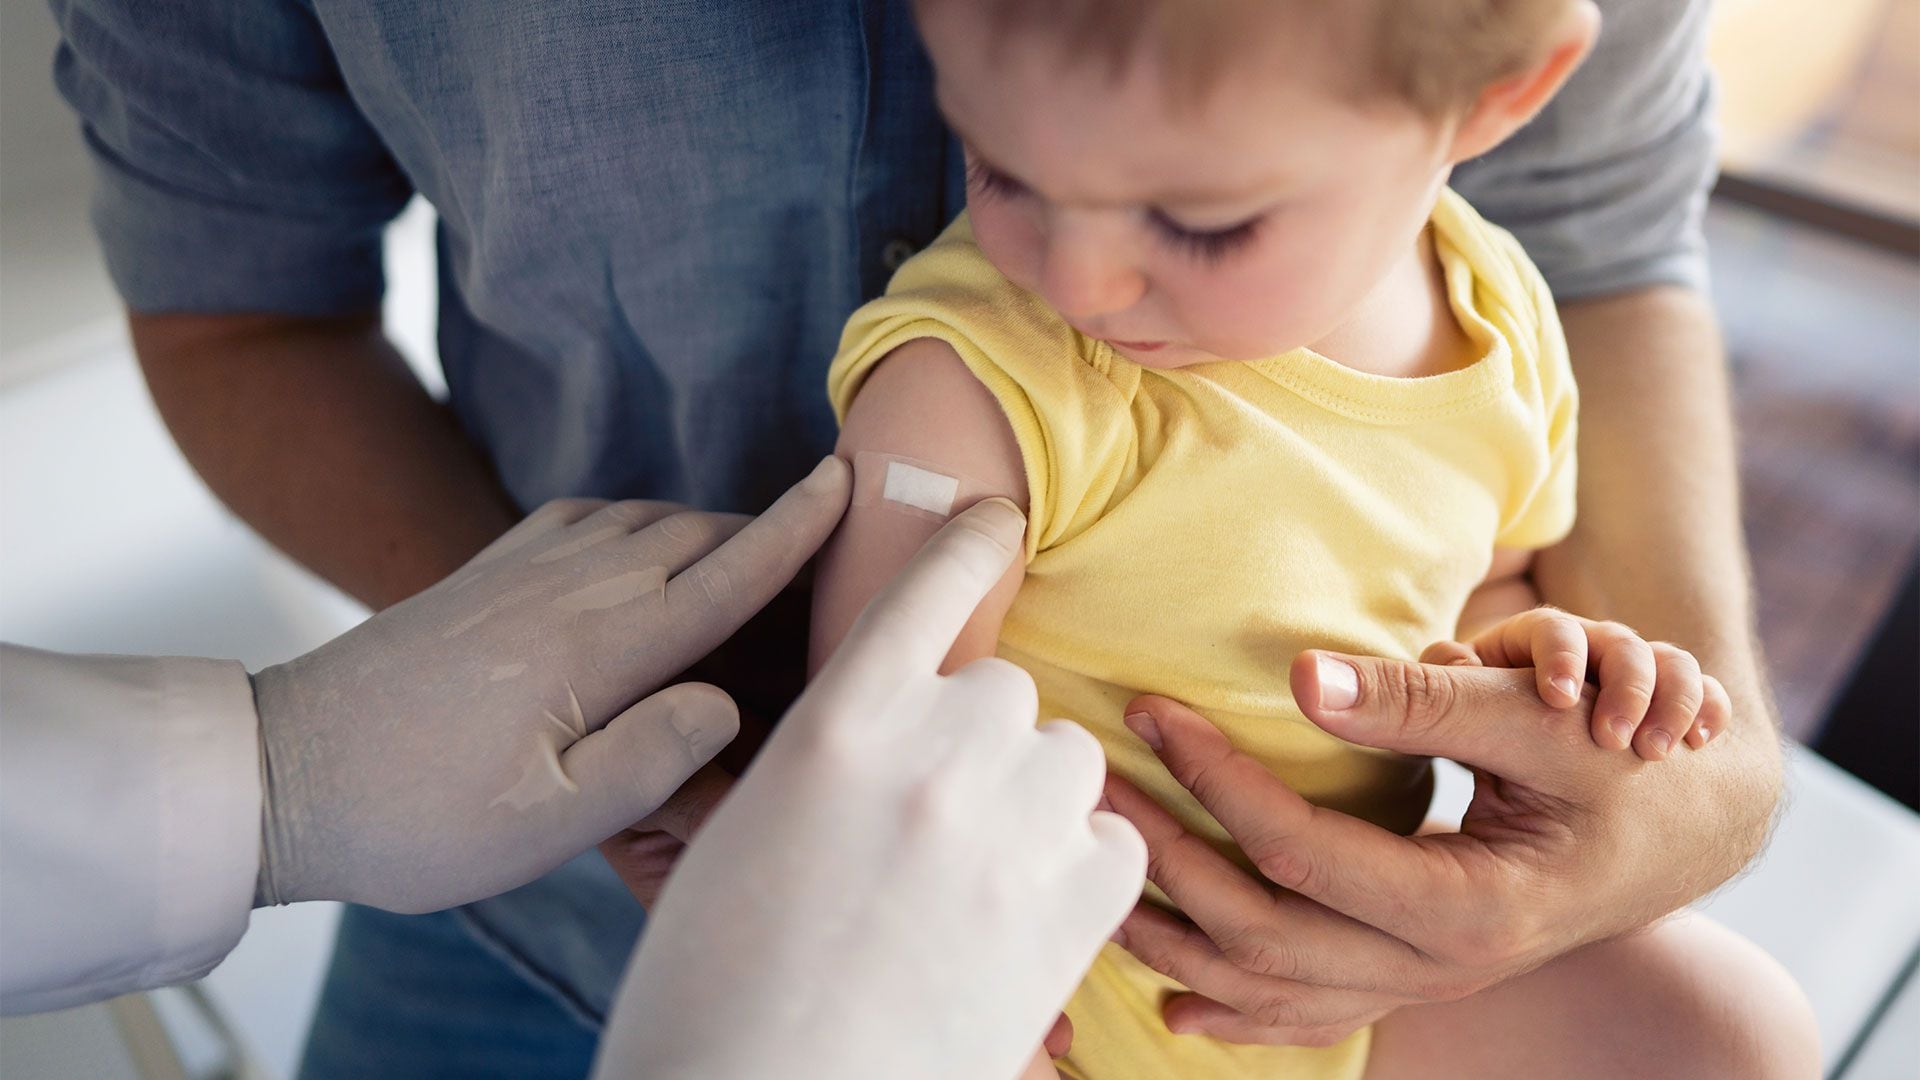 La principal defensa contra la poliomielitis es la vacunación, esencial para prevenir la propagación del virus (Getty)